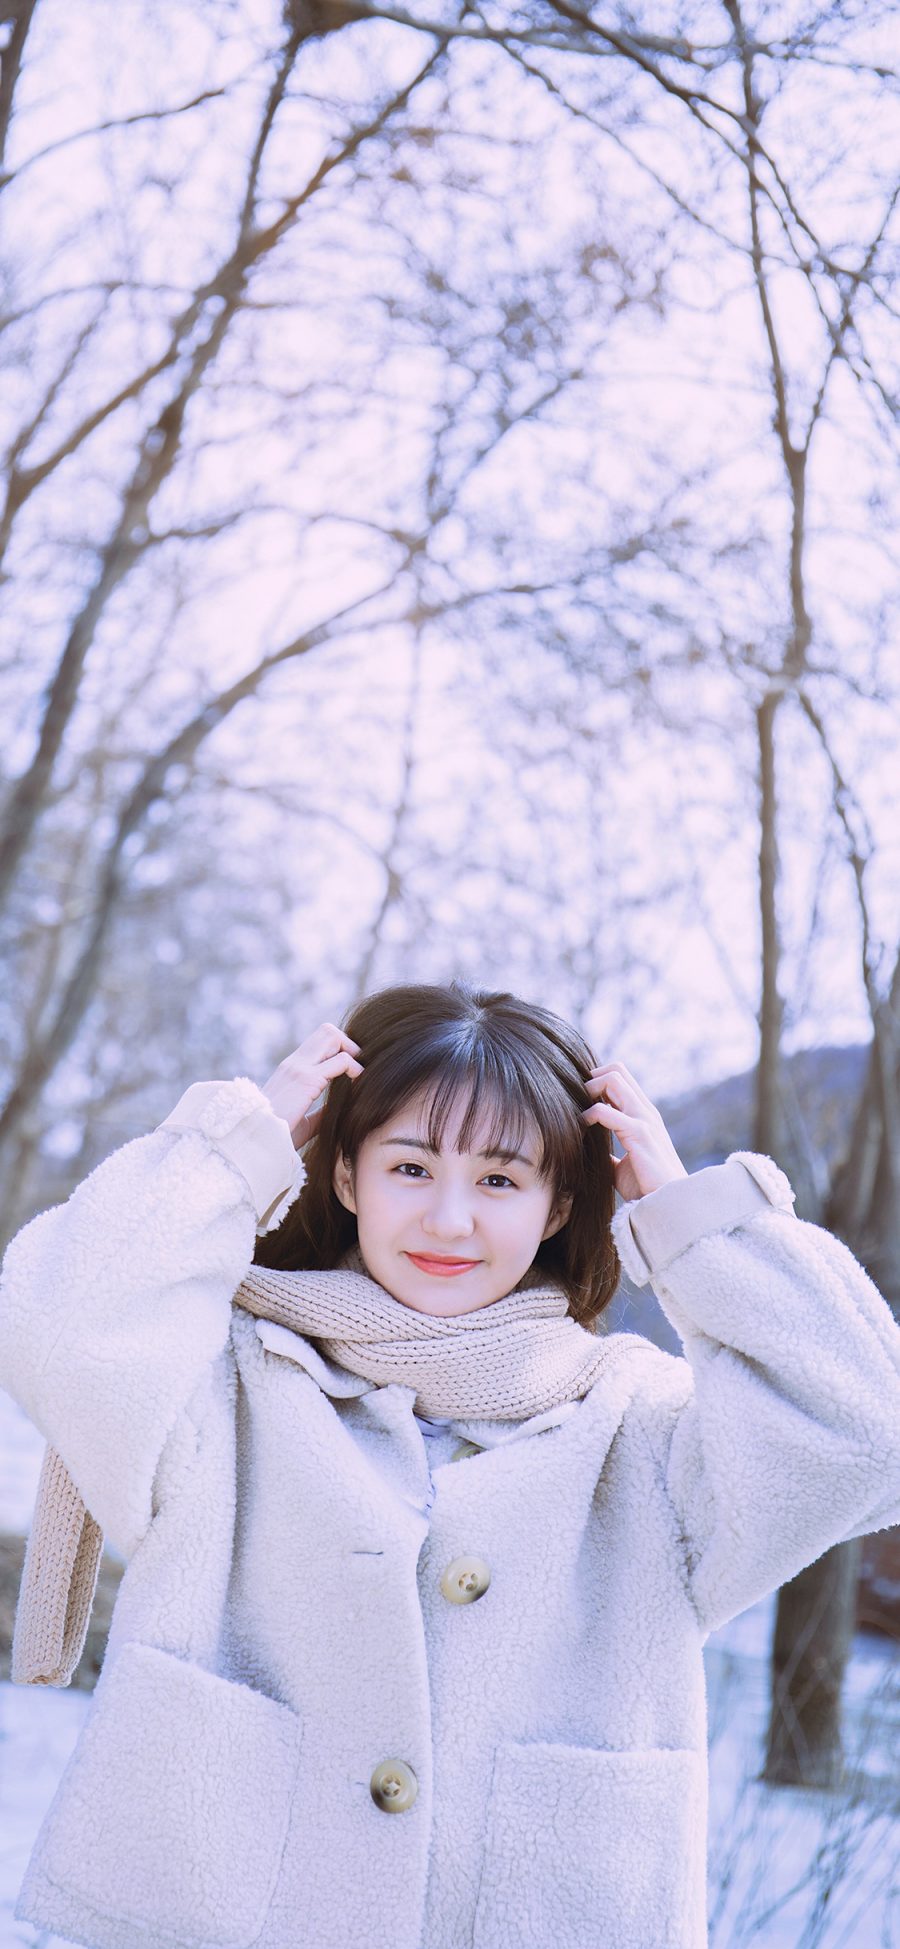 [2436×1125]郑合惠子 演员 明星 艺人 冬天 苹果手机美女壁纸图片